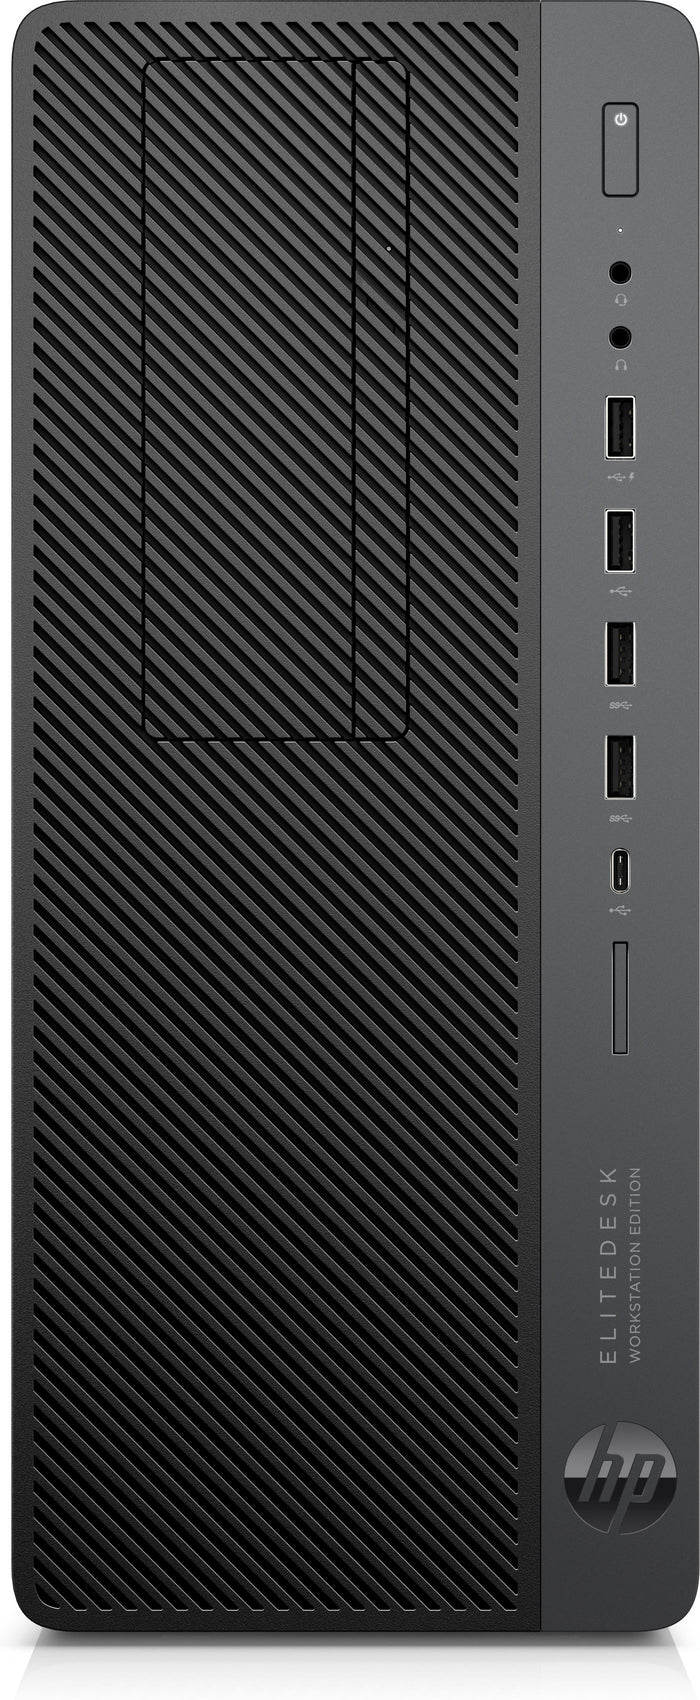 HP EliteDesk 800 G4 Workstation Tower [Hexa] i5-8600 3.10GHz HDMI USB-C 256GB NVMe + 1TB HDD 8GB DDR4 DVD